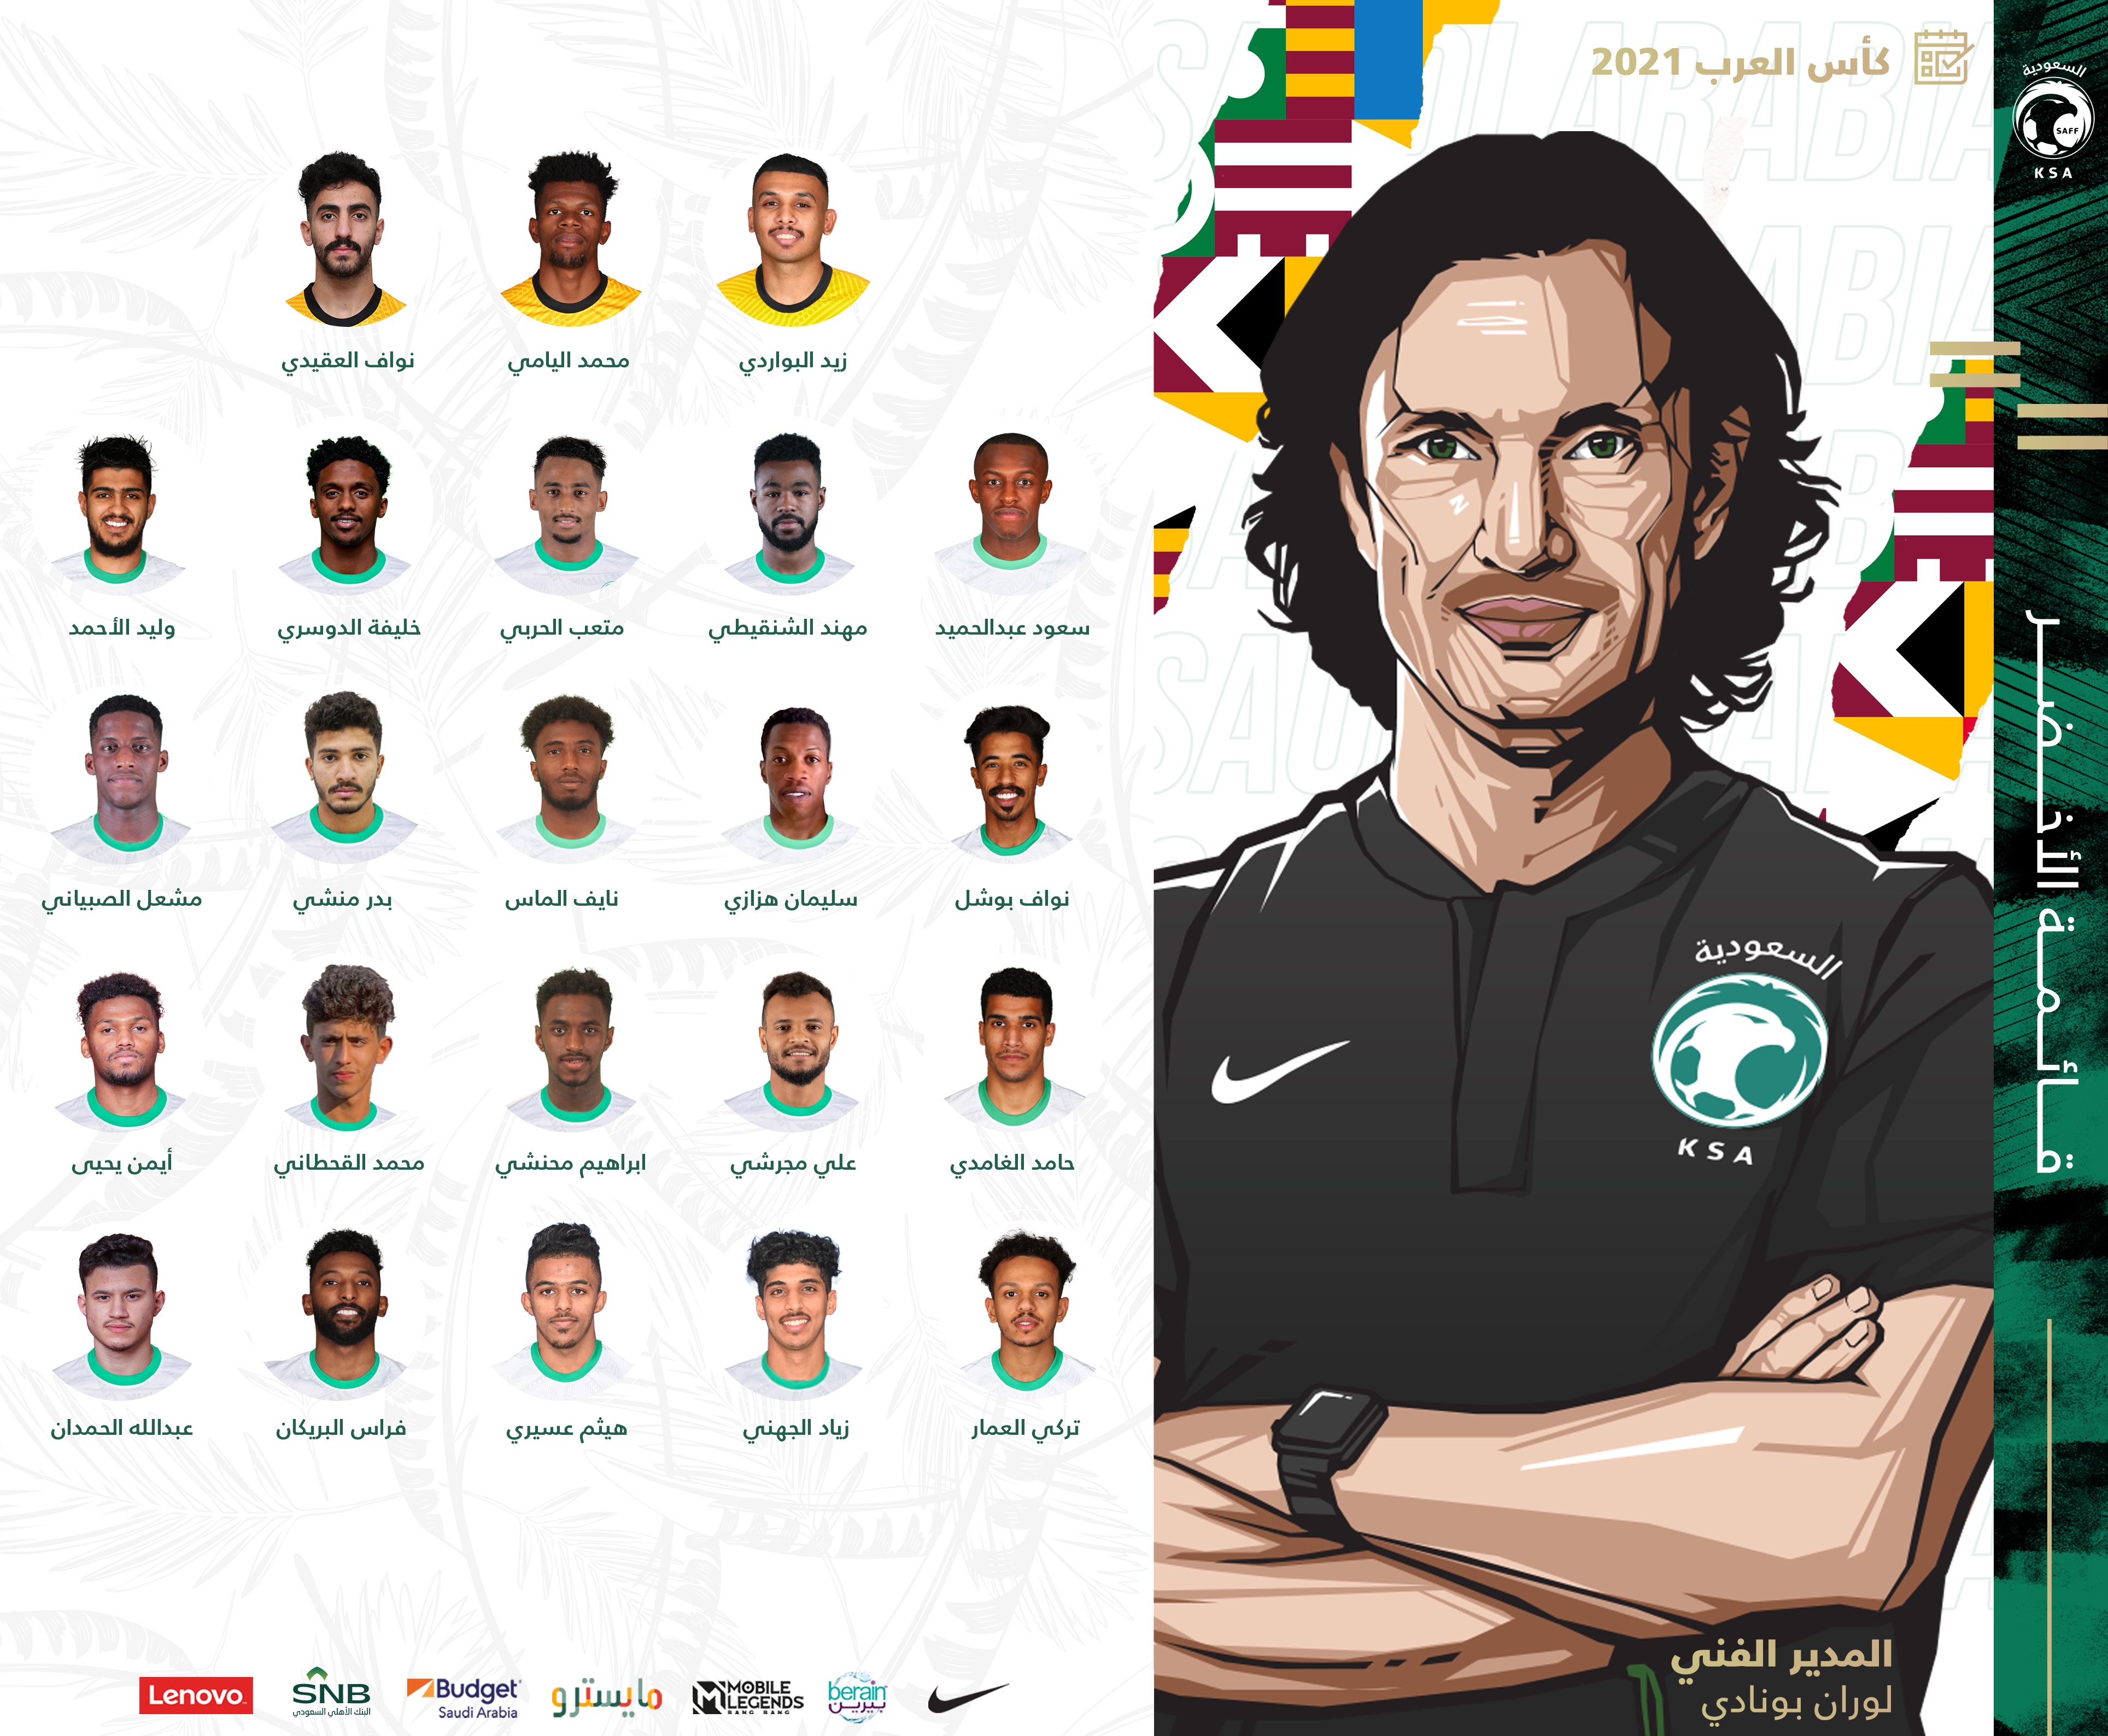 كأس العرب للمنتخبات - قطر 2021 - صفحة 2 P_21563kj8u0